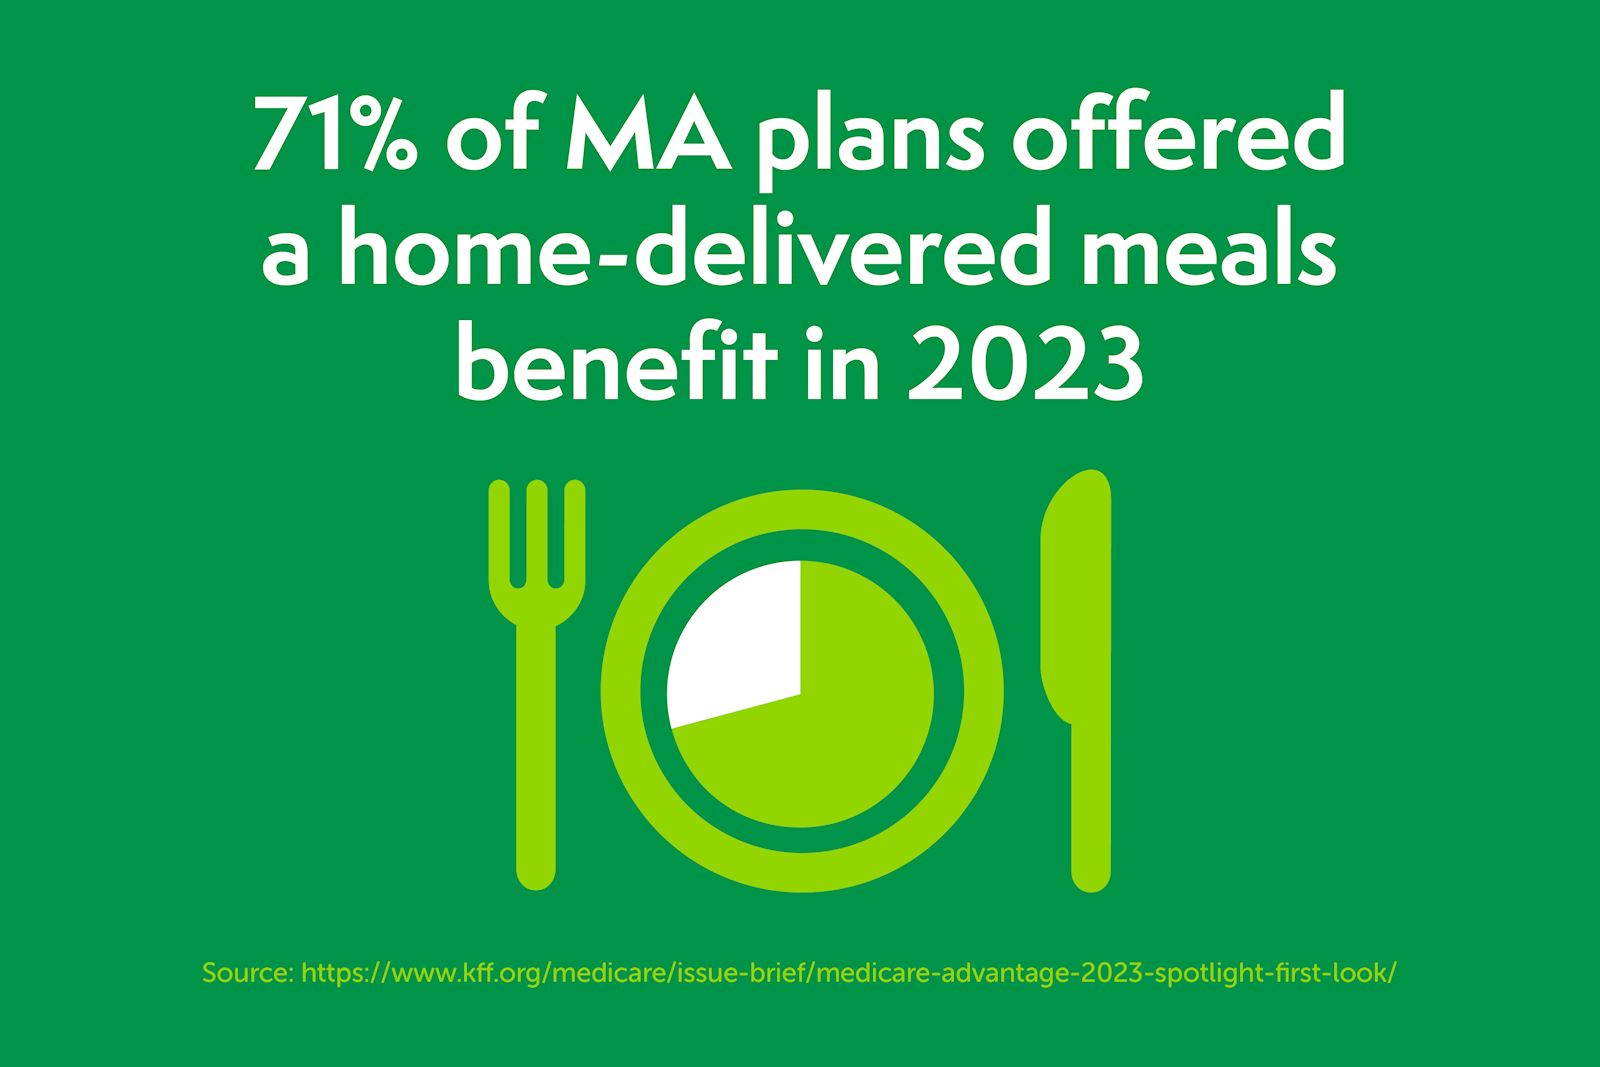 3 ways health plans offer home-delivered meal benefits